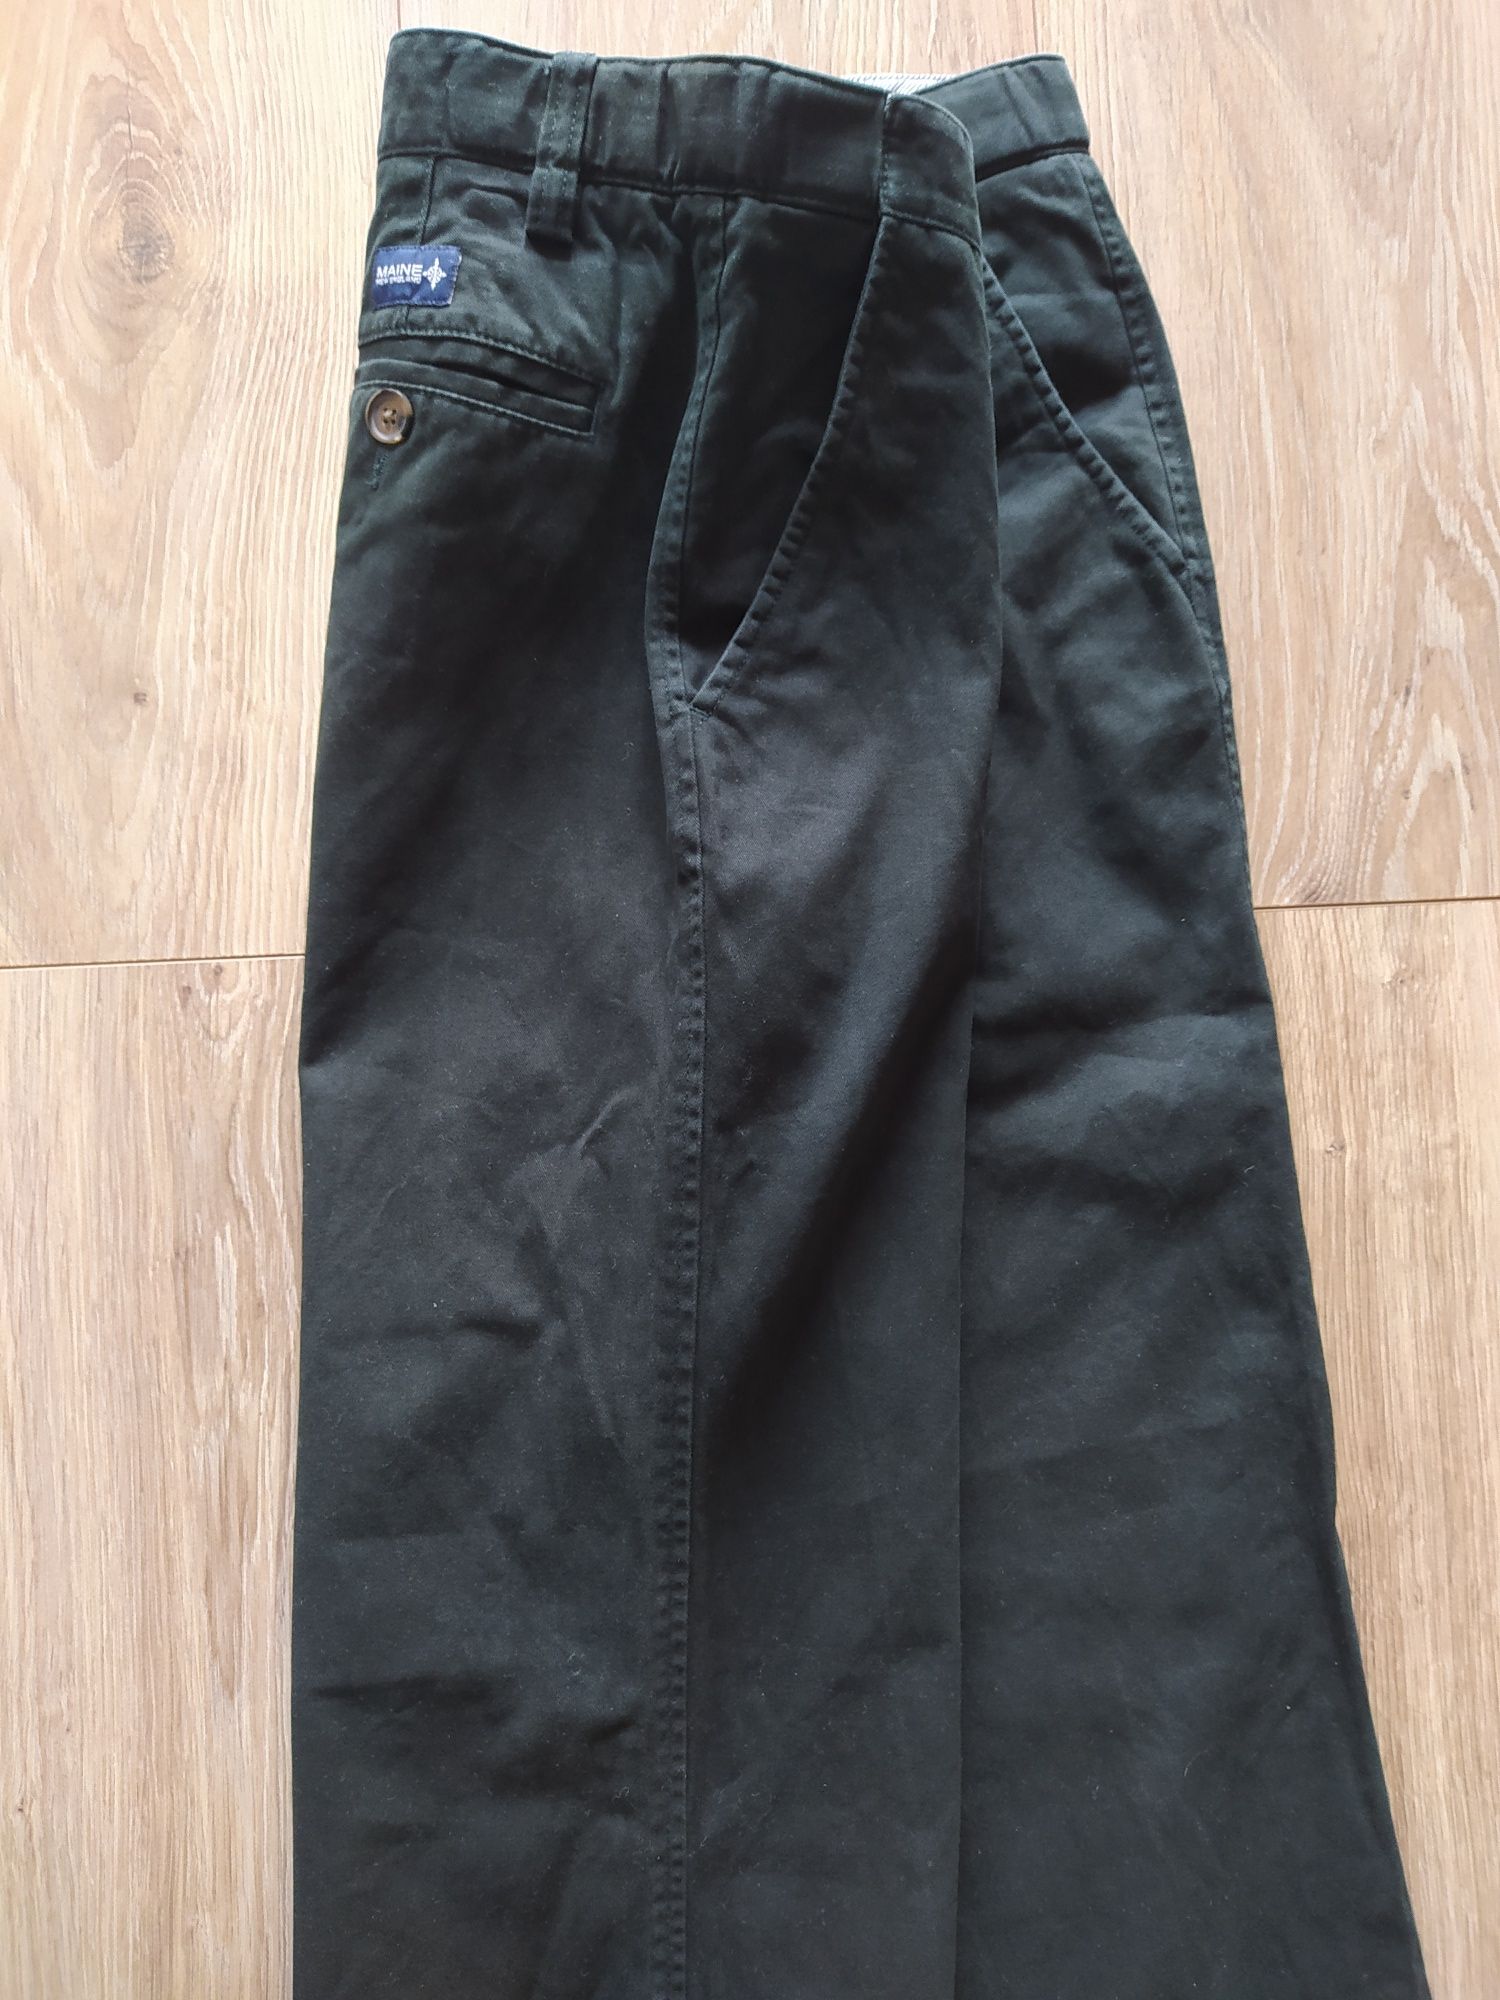 Maine - spodnie męskie, rozmiar 34 (L)